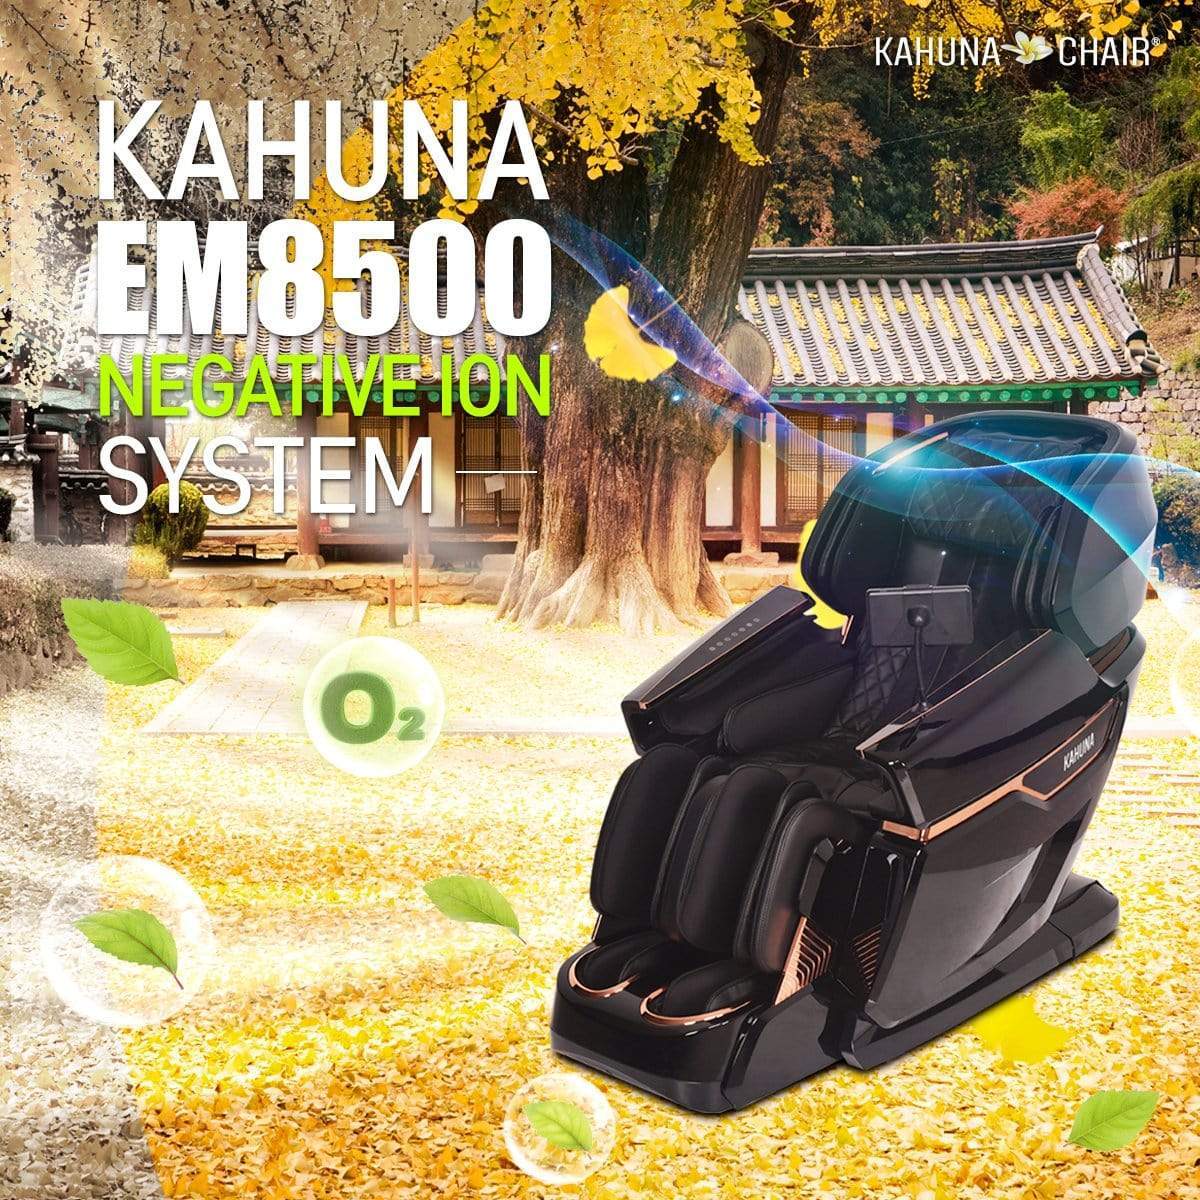 Ace Massage Chairs KAHUNA CHAIR - EM 8500